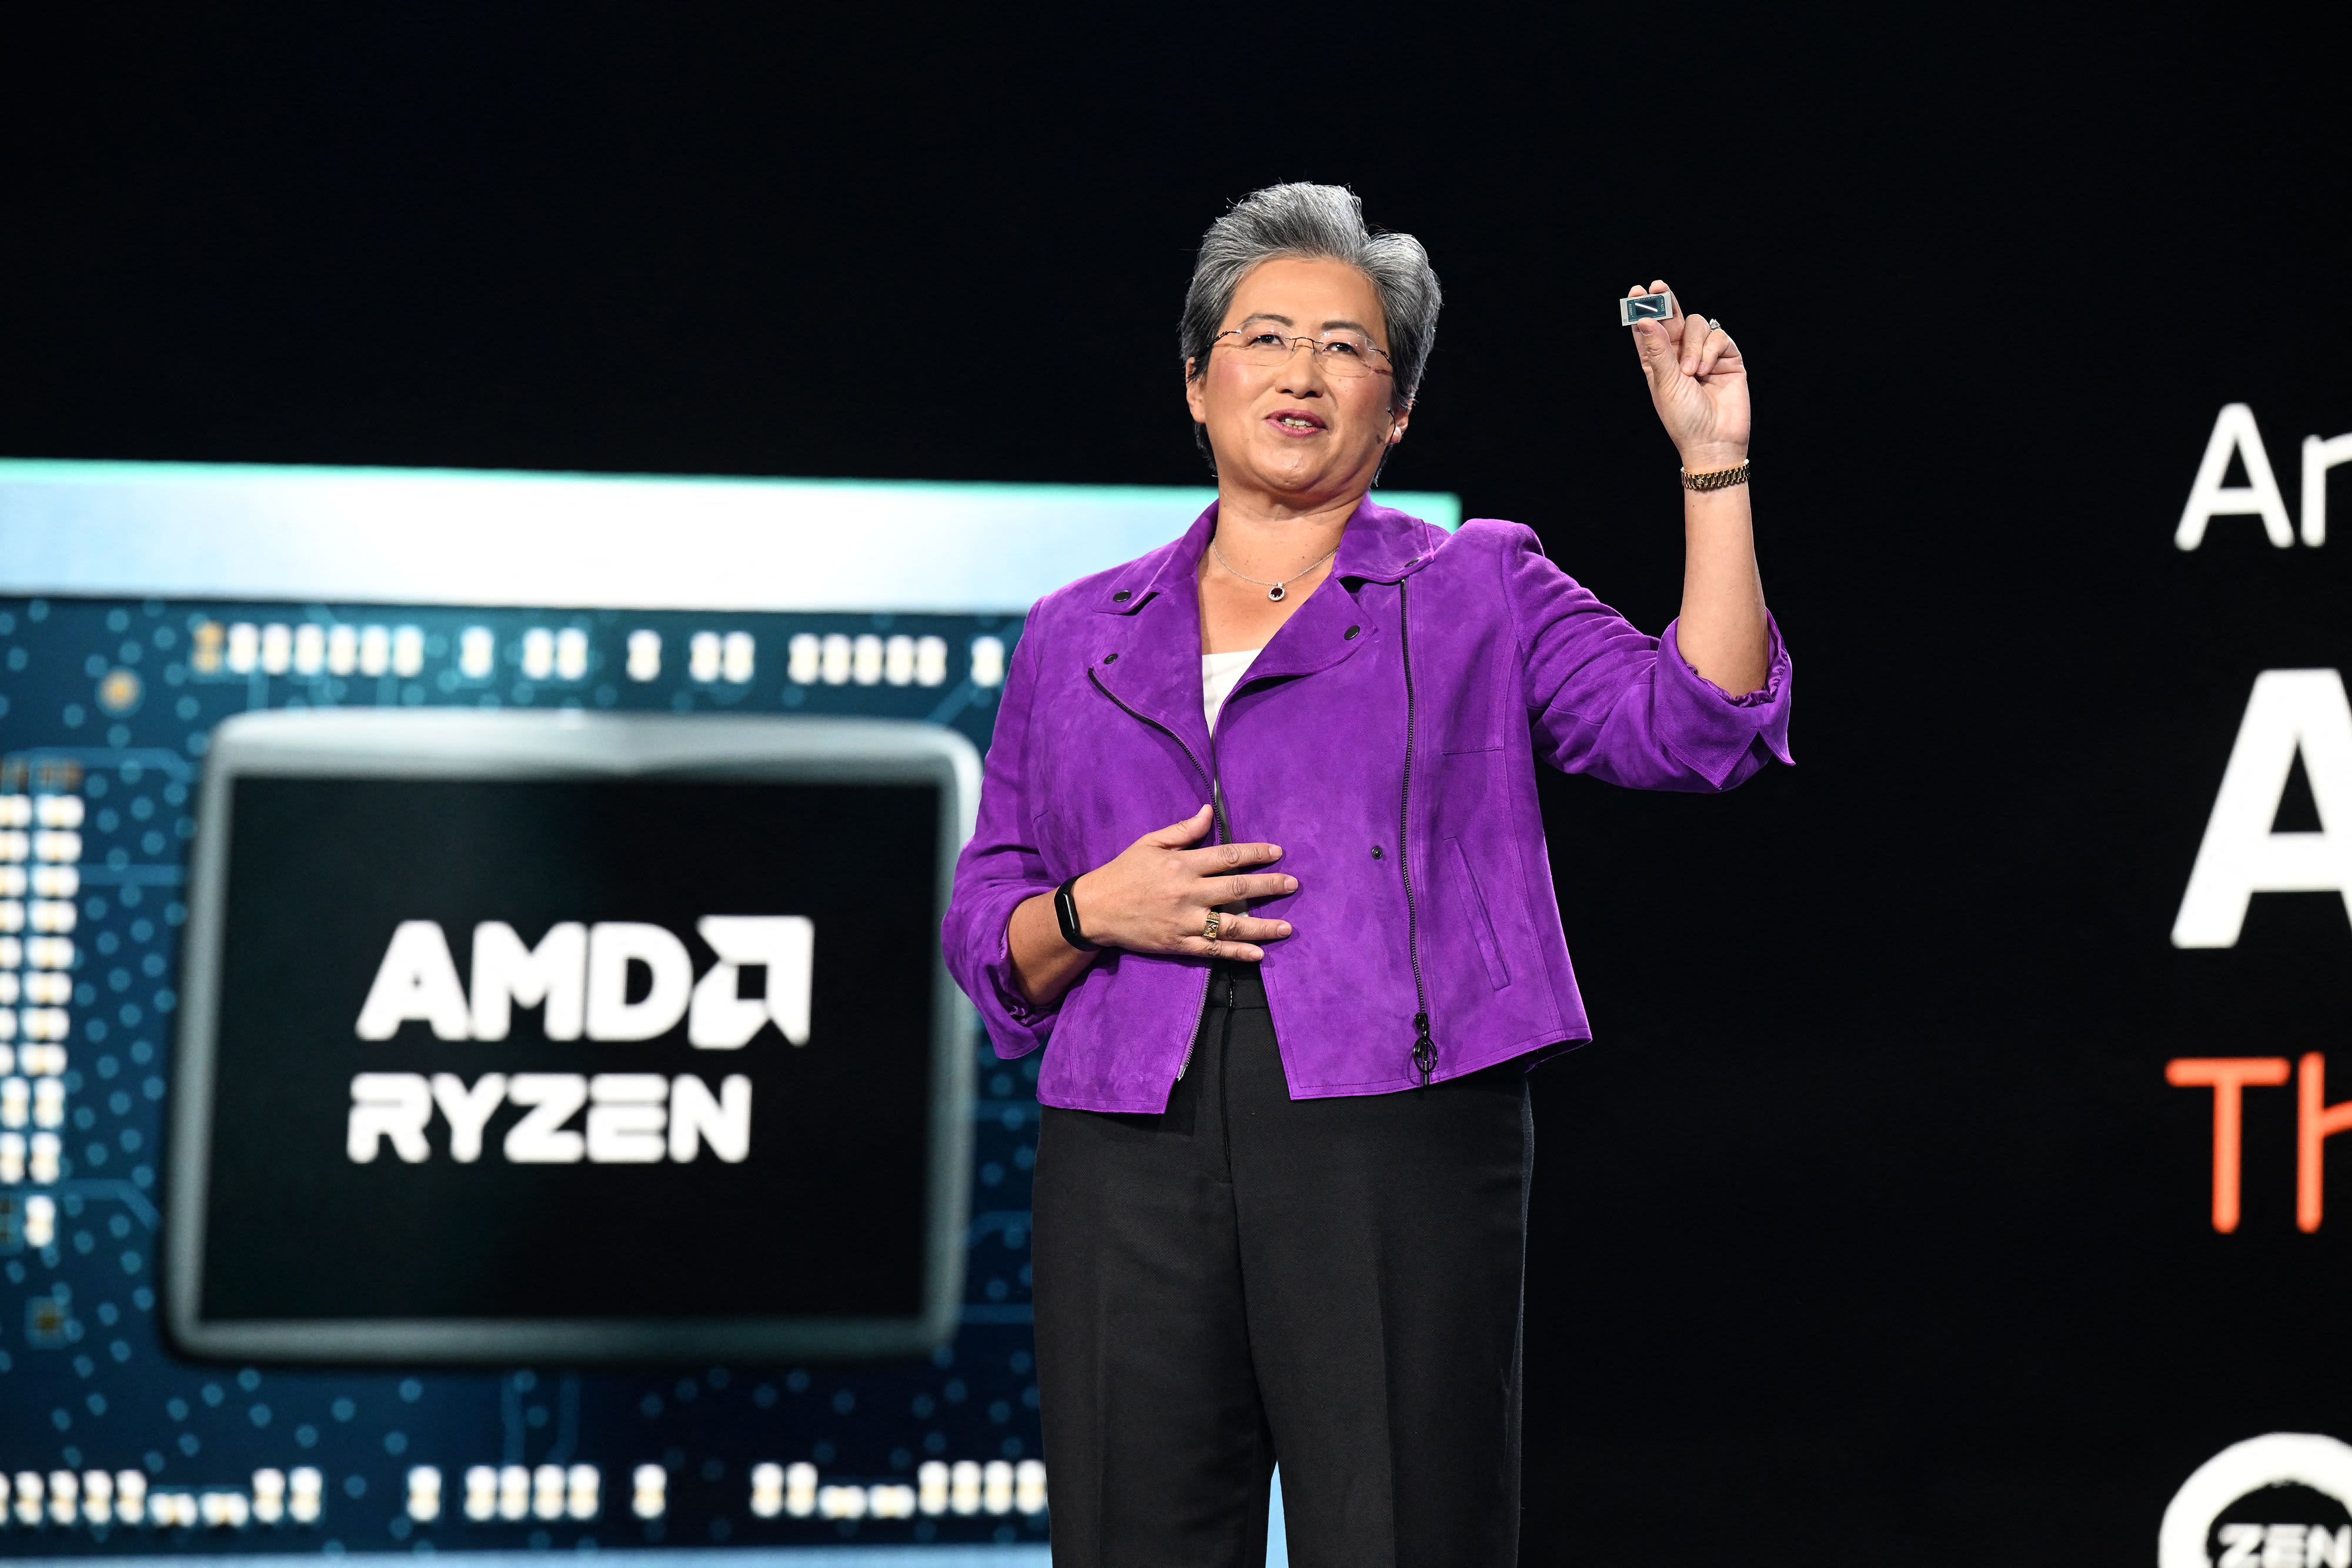 AMD prevede di vendere 2 miliardi di dollari di chip per l'intelligenza artificiale il prossimo anno